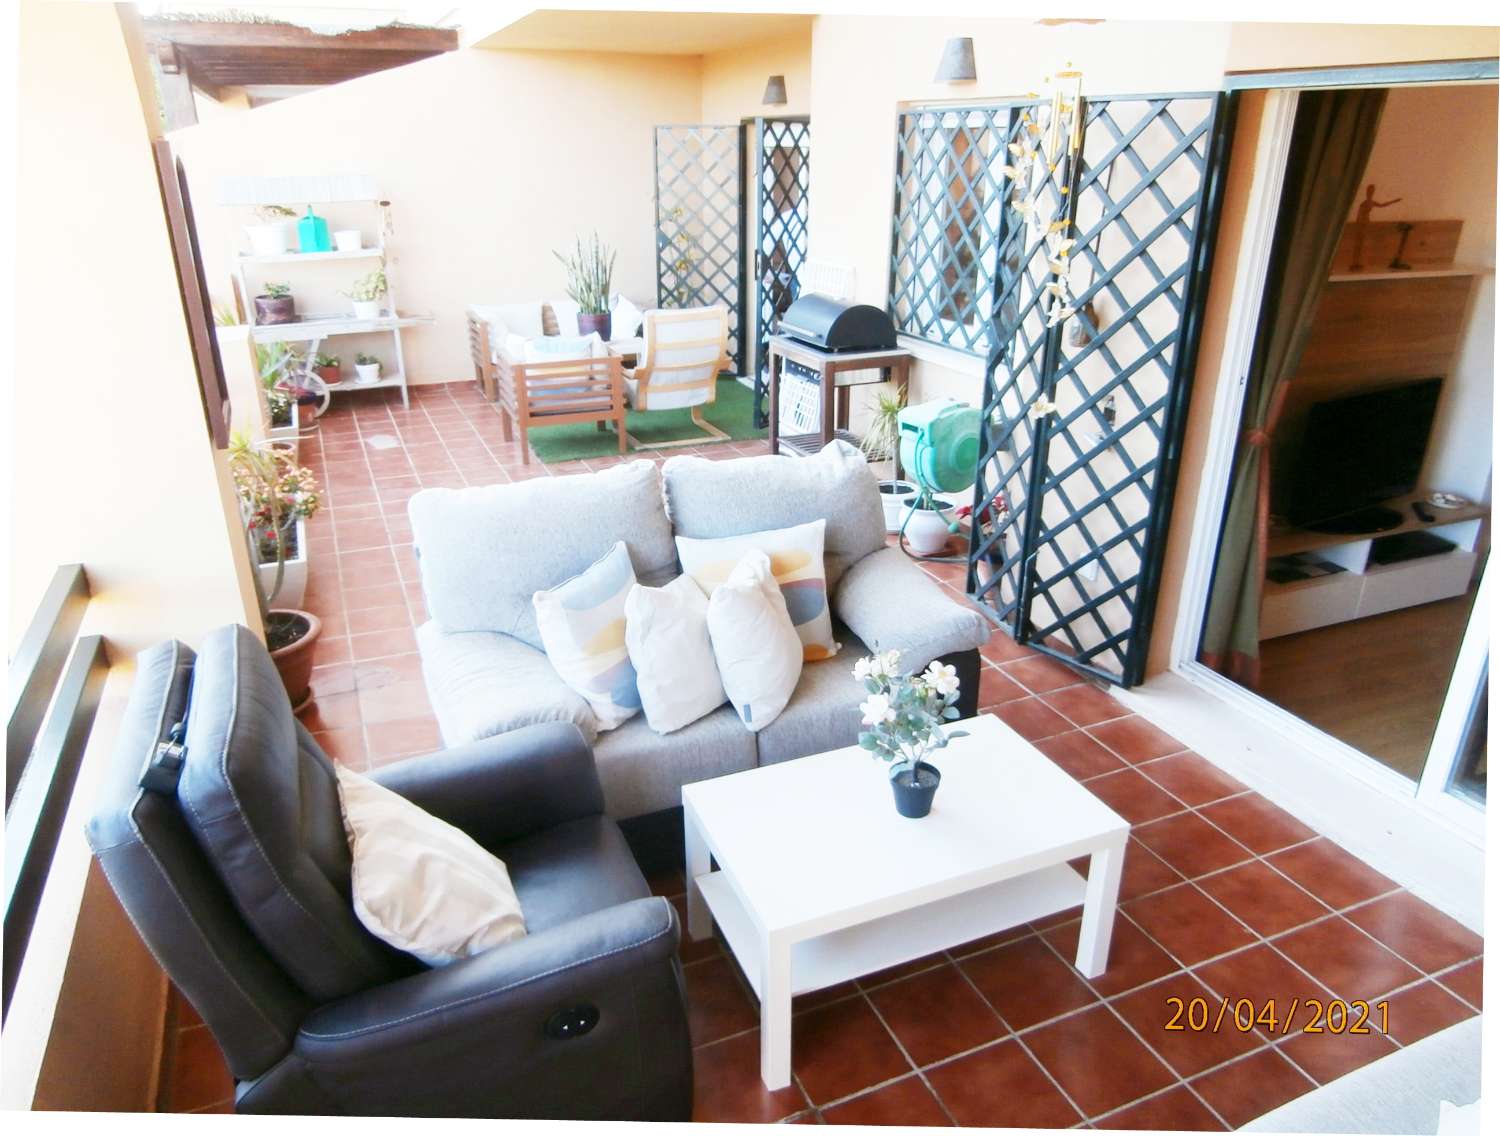 OPORTUNIDAD, recién reformado apartamento, planta baja con gran jardín en venta, zona de Cancelada Estepona, a 13 km de Puerto Banús.